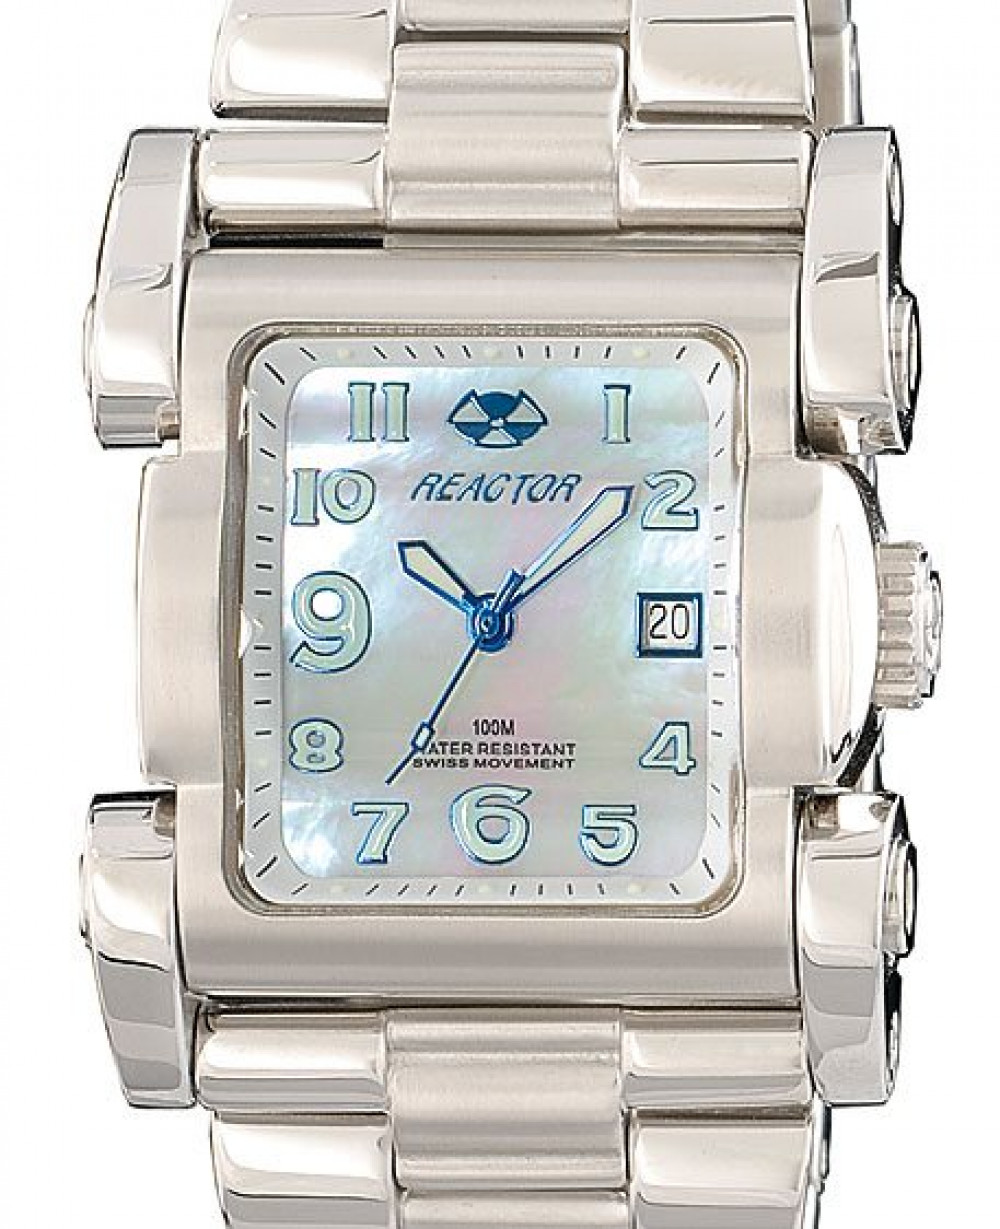 Zegarek firmy Reactor, model Ion Midsize